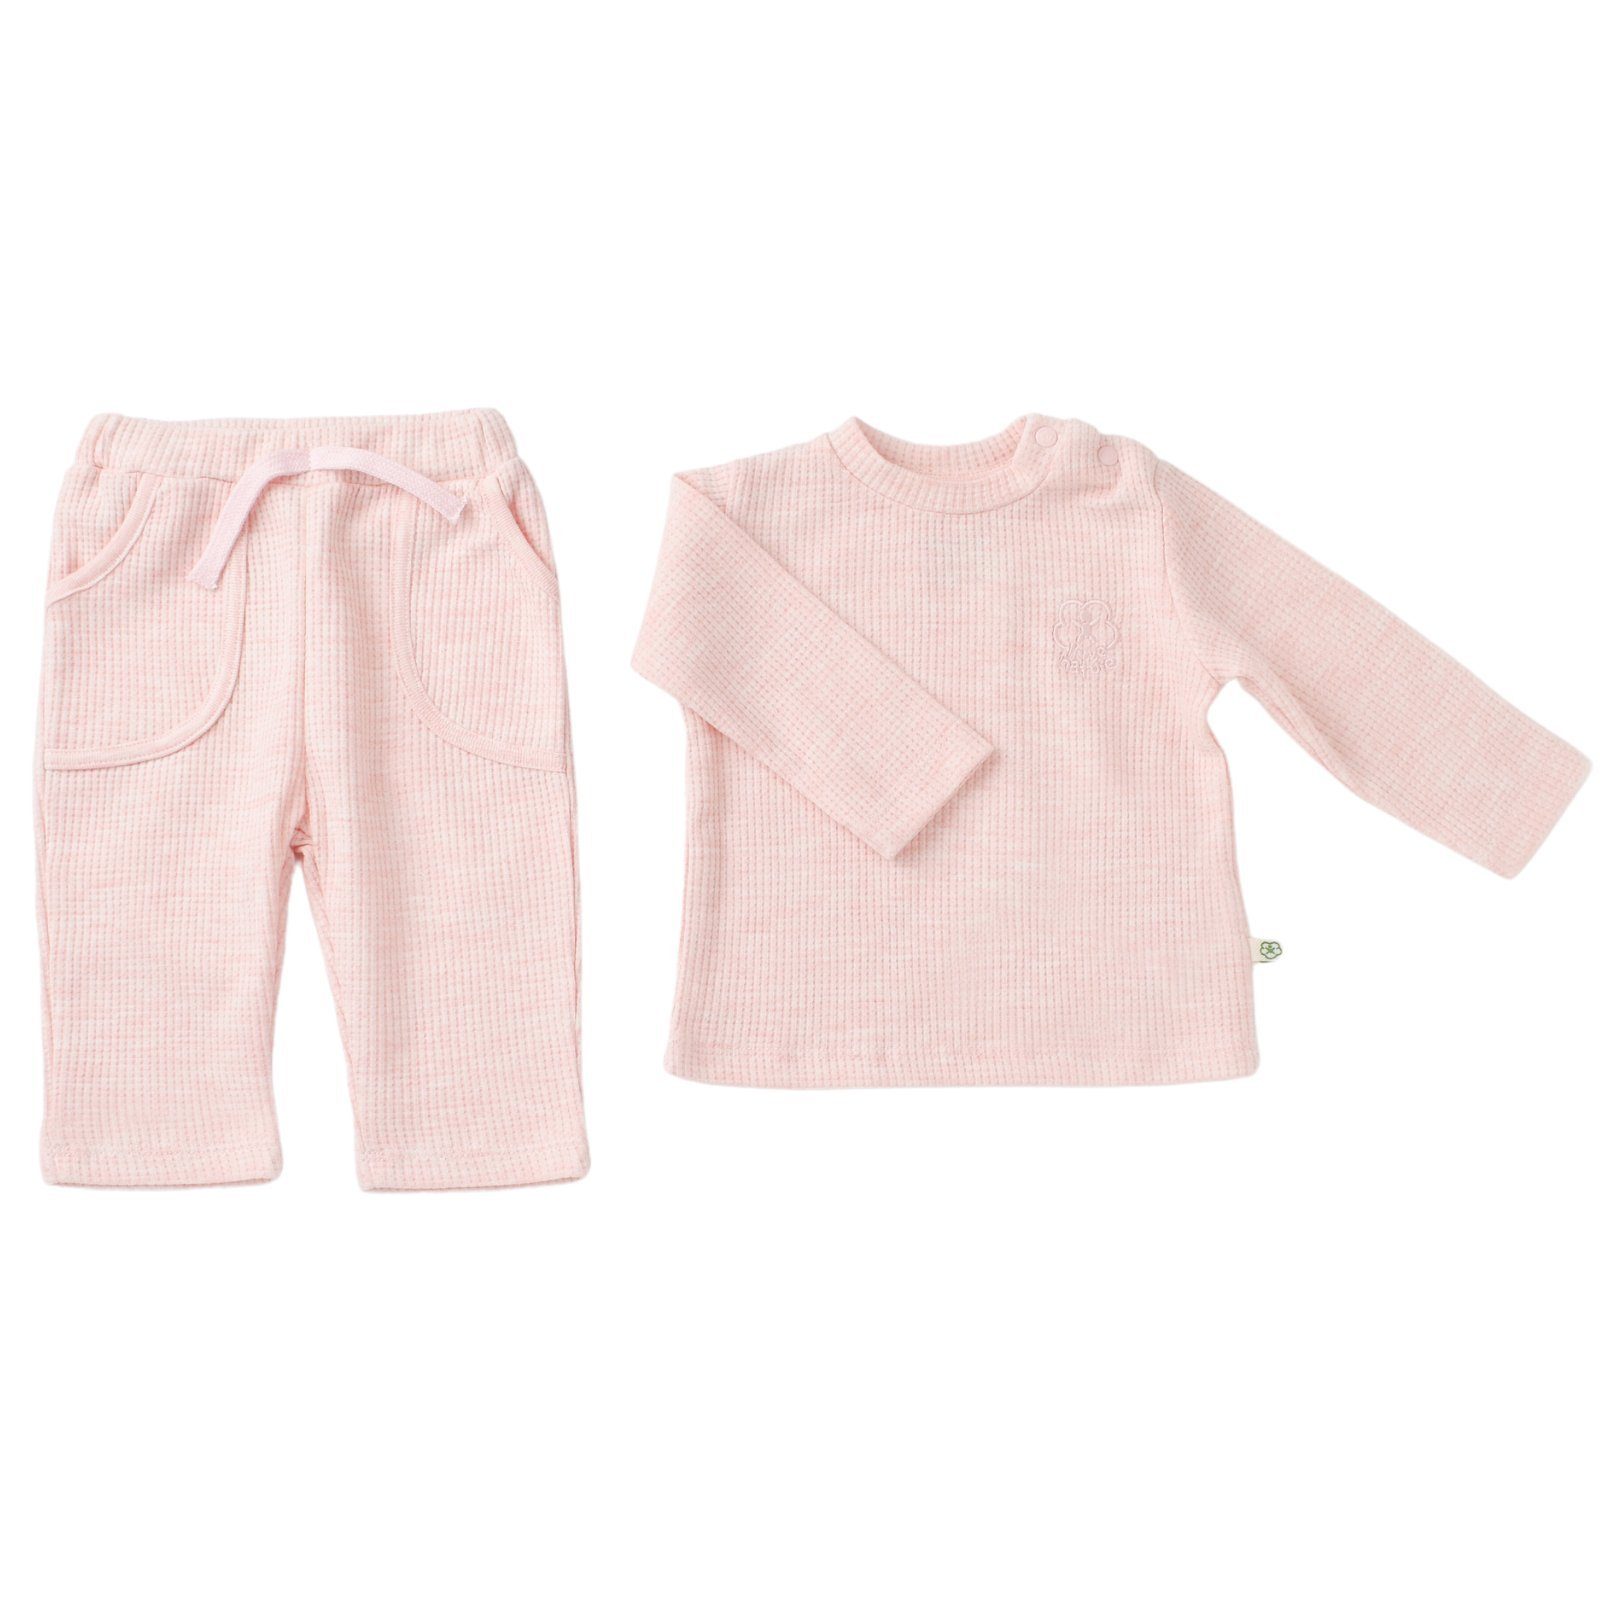 biorganic Schlafanzug Shirt & Hose Baby Set Nature In Waffle für Jungen und Mädchen Unisex (Pyjama-Set, 2 tlg., Langarmshirt + Hose) Waffle-Struktur, 100% Bio-Baumwolle, GOTS-zertifiziert rosa | Pyjama-Sets